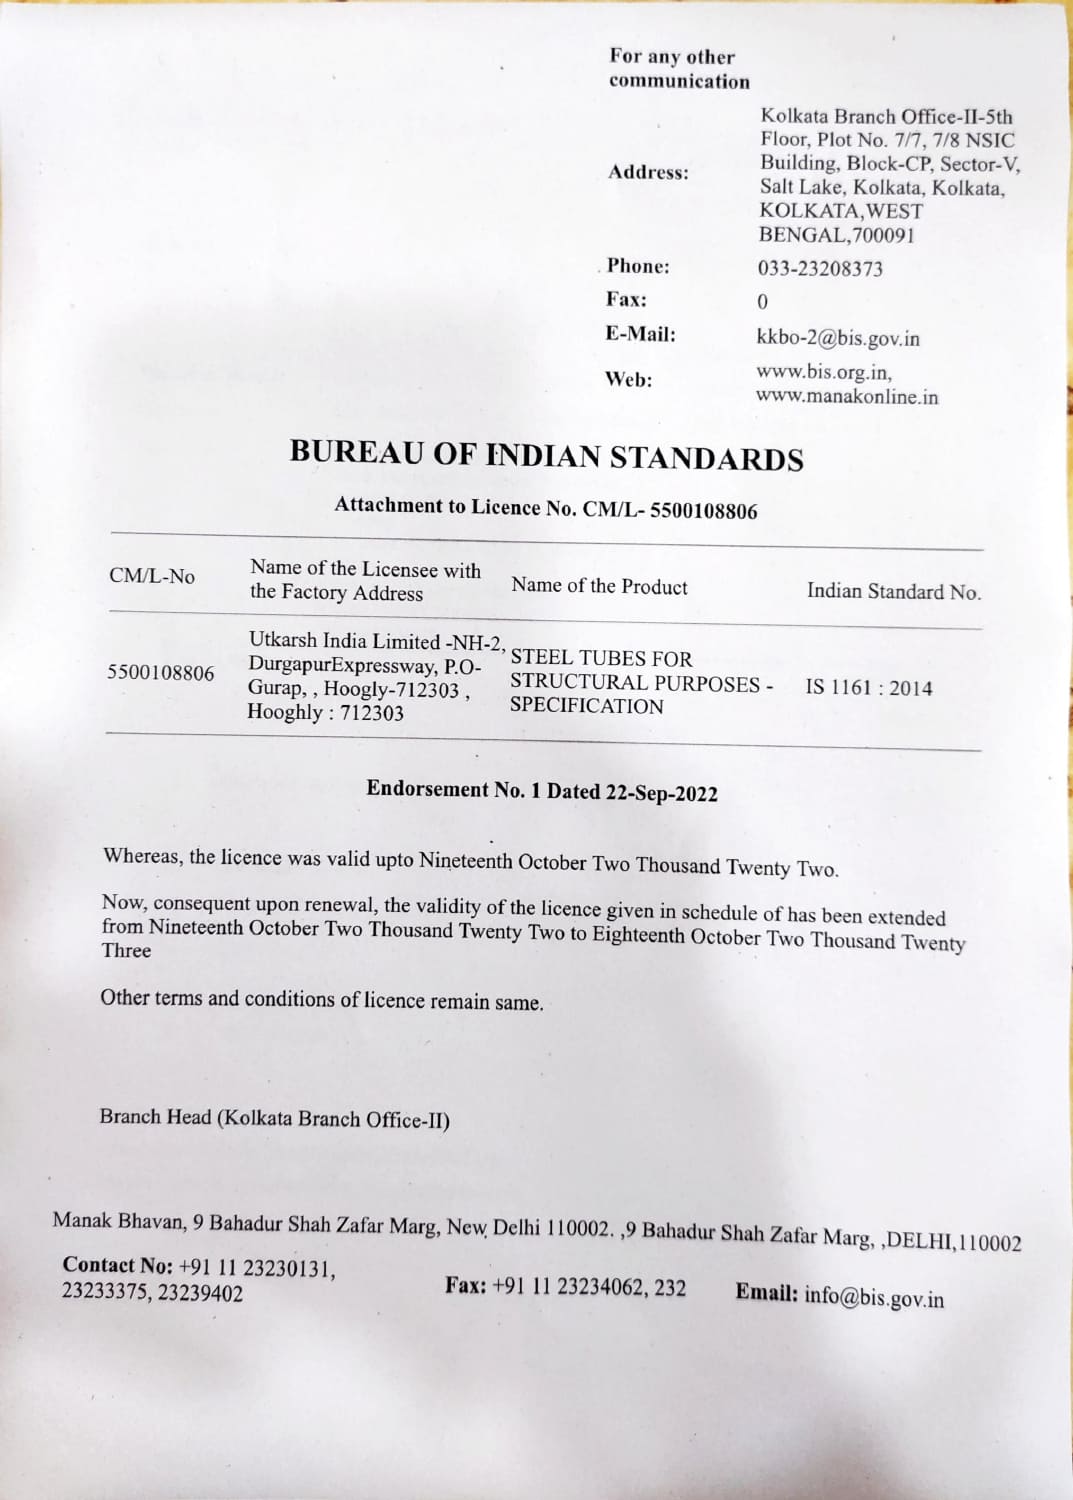 Bureau of Indian Standards IS 1161-2014 (Gurap)